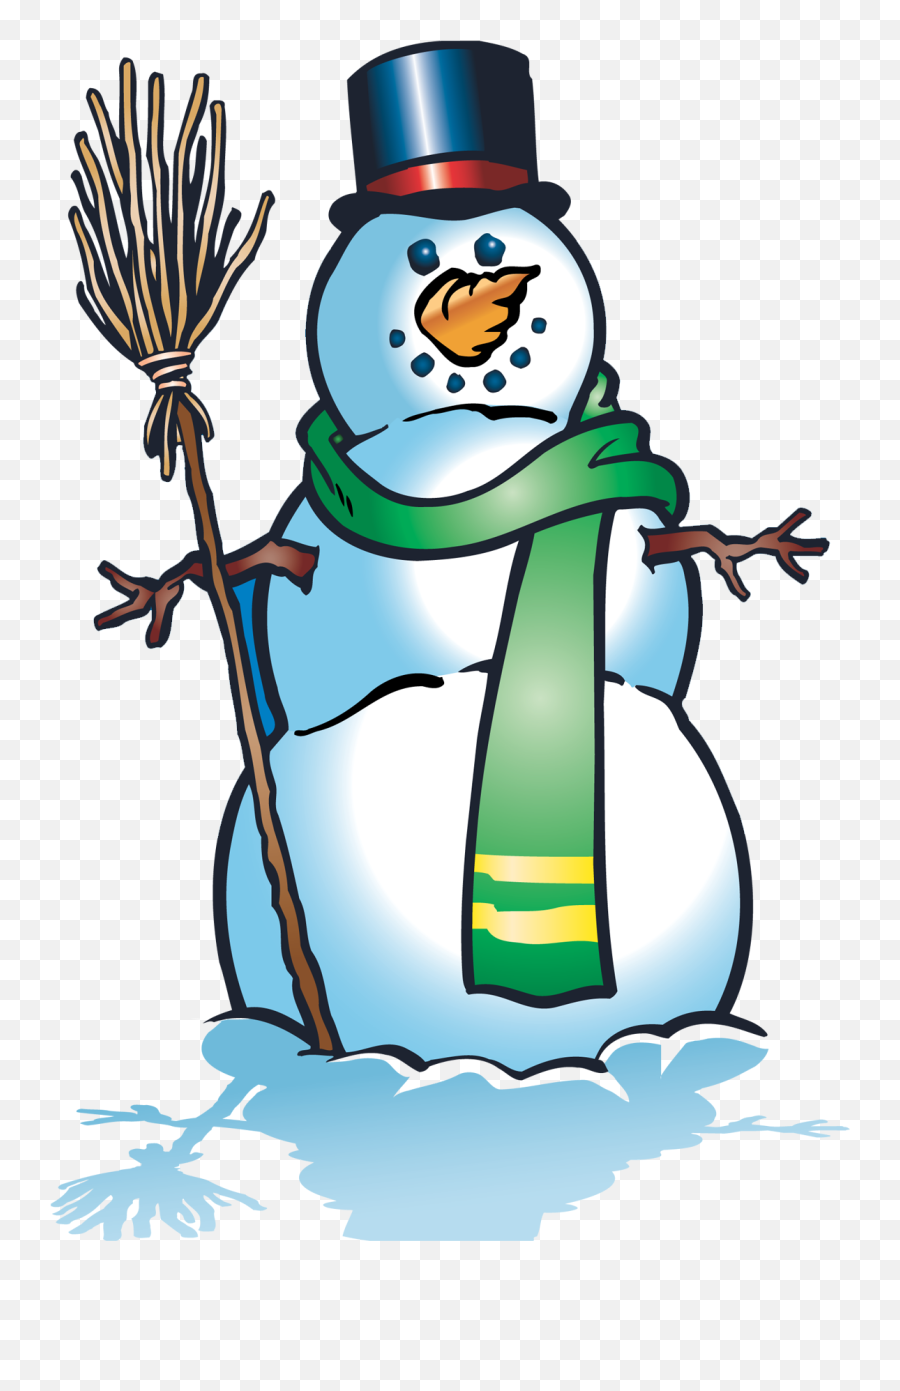 Snowman Png Emoji,Smiley Emoticon Snowman